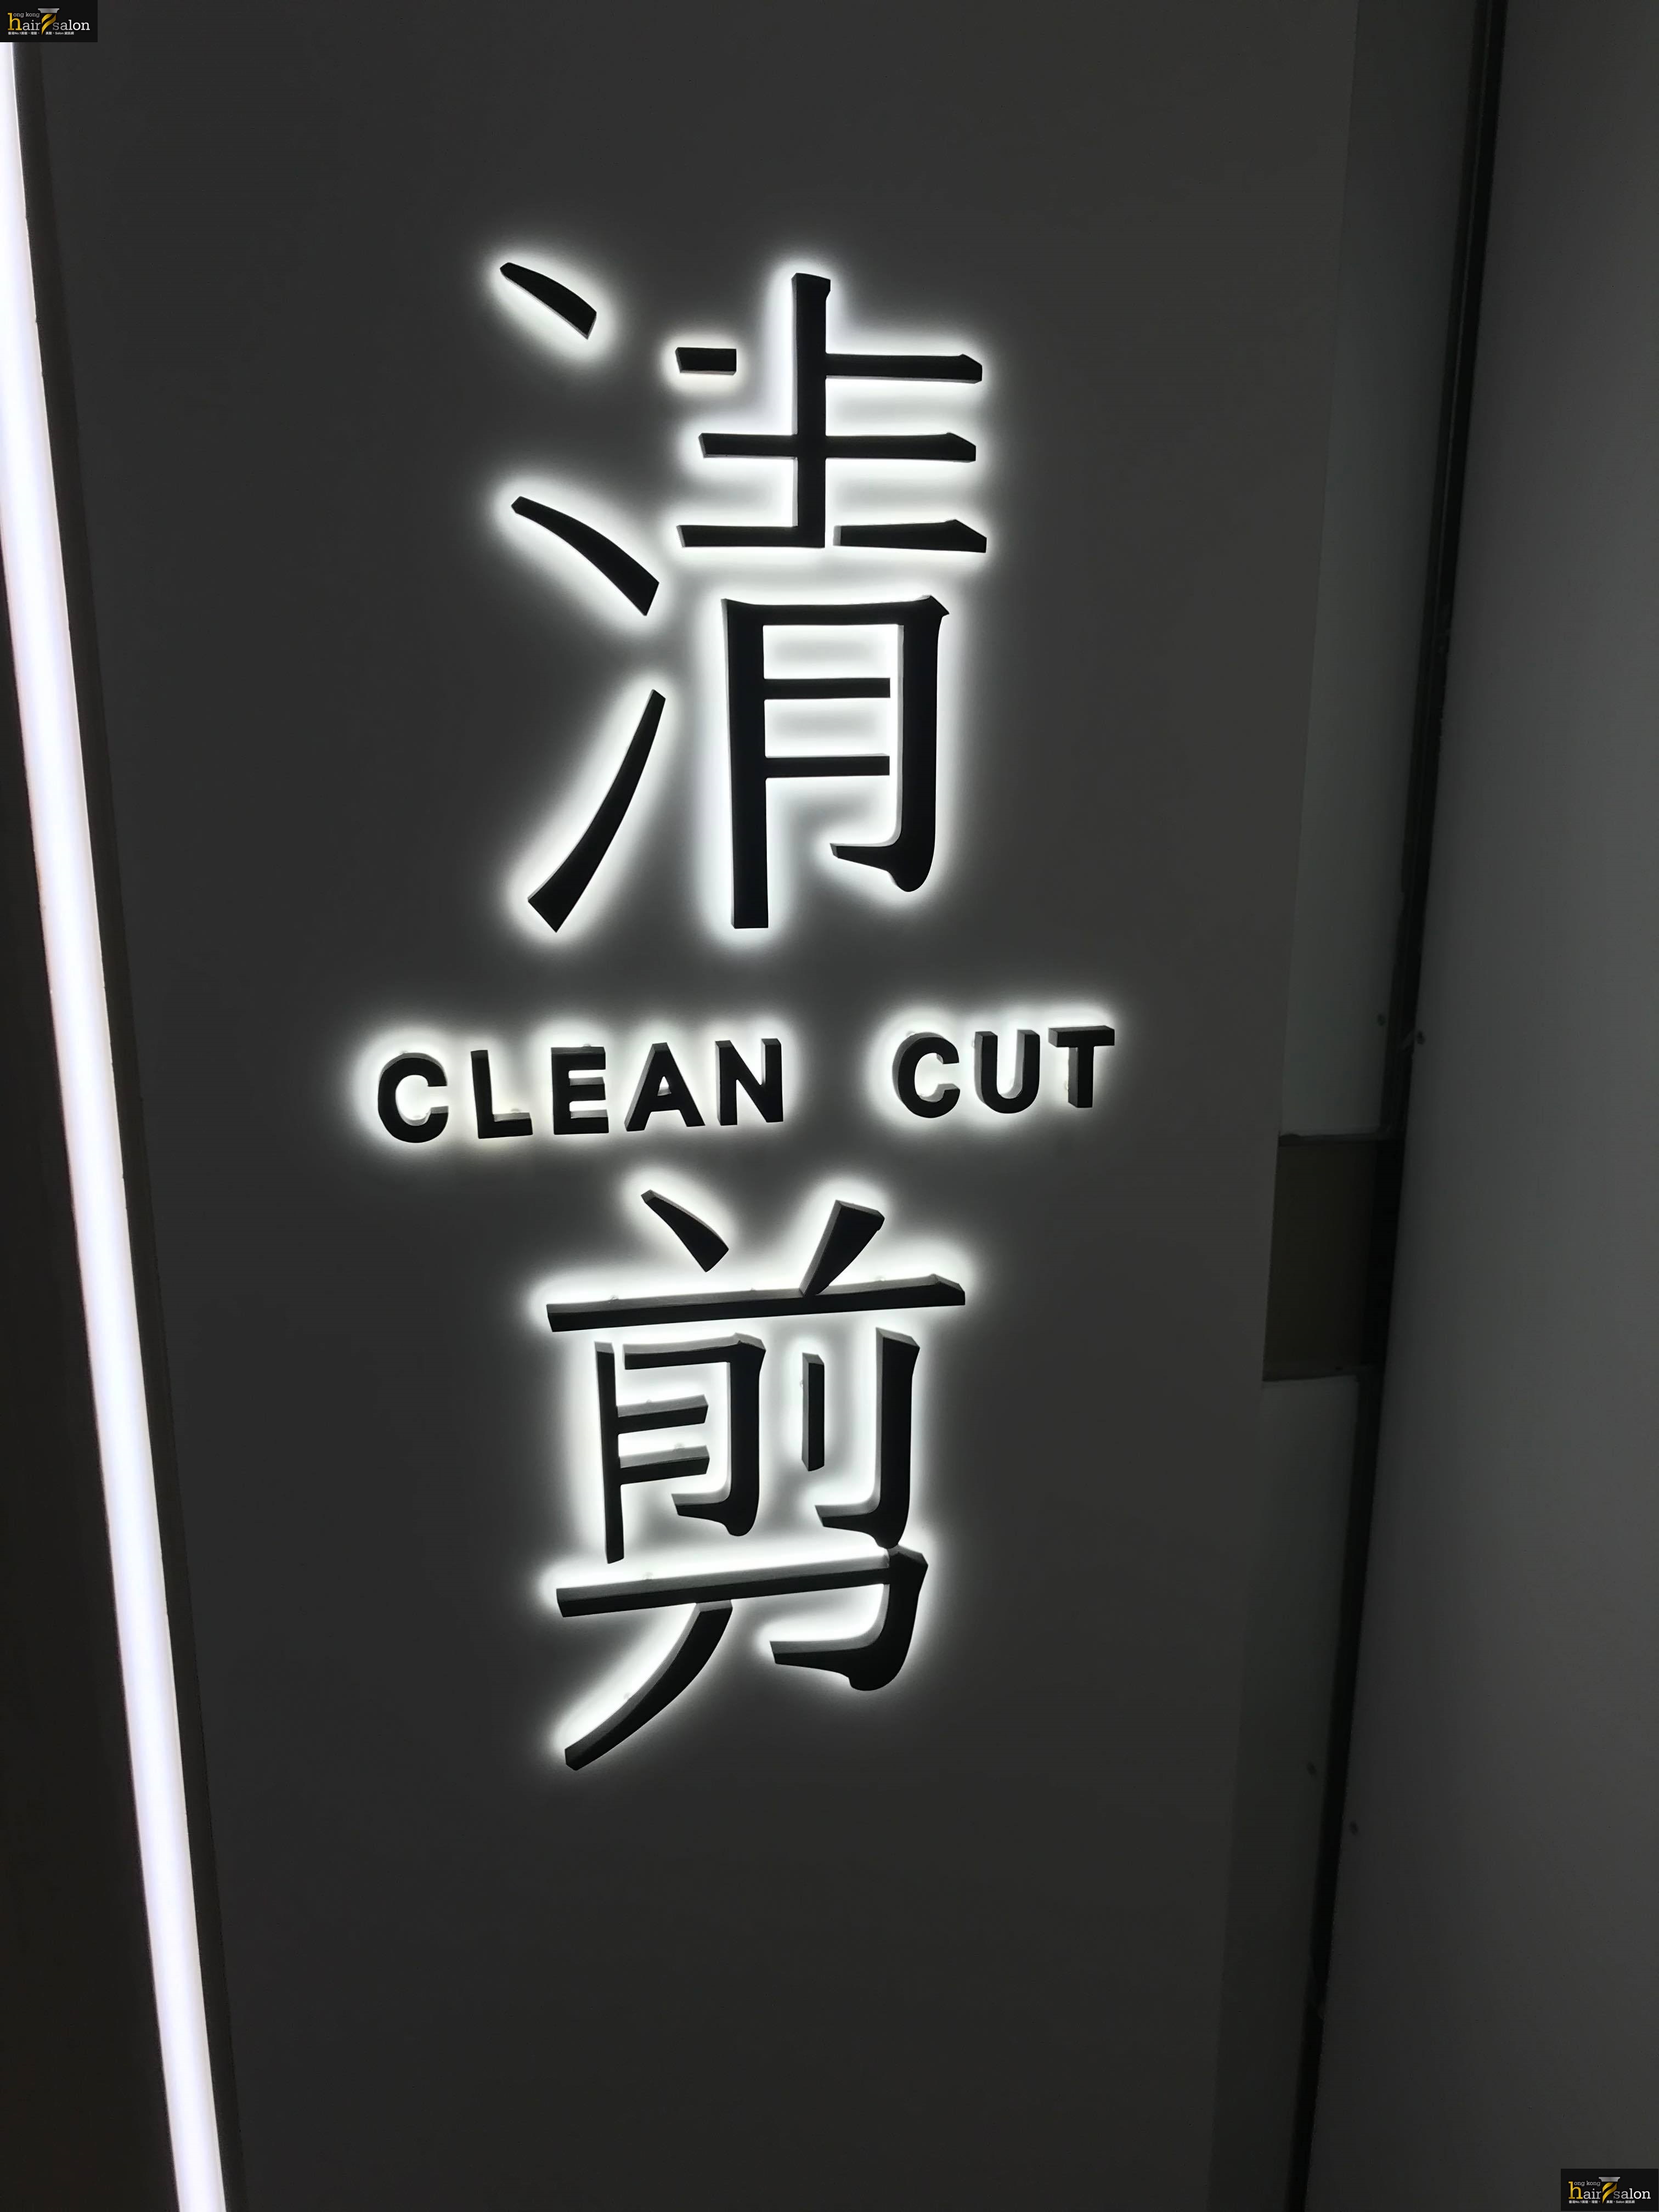 髮型屋 Salon: 清剪 CLEAN CUT (Yoho Mall)